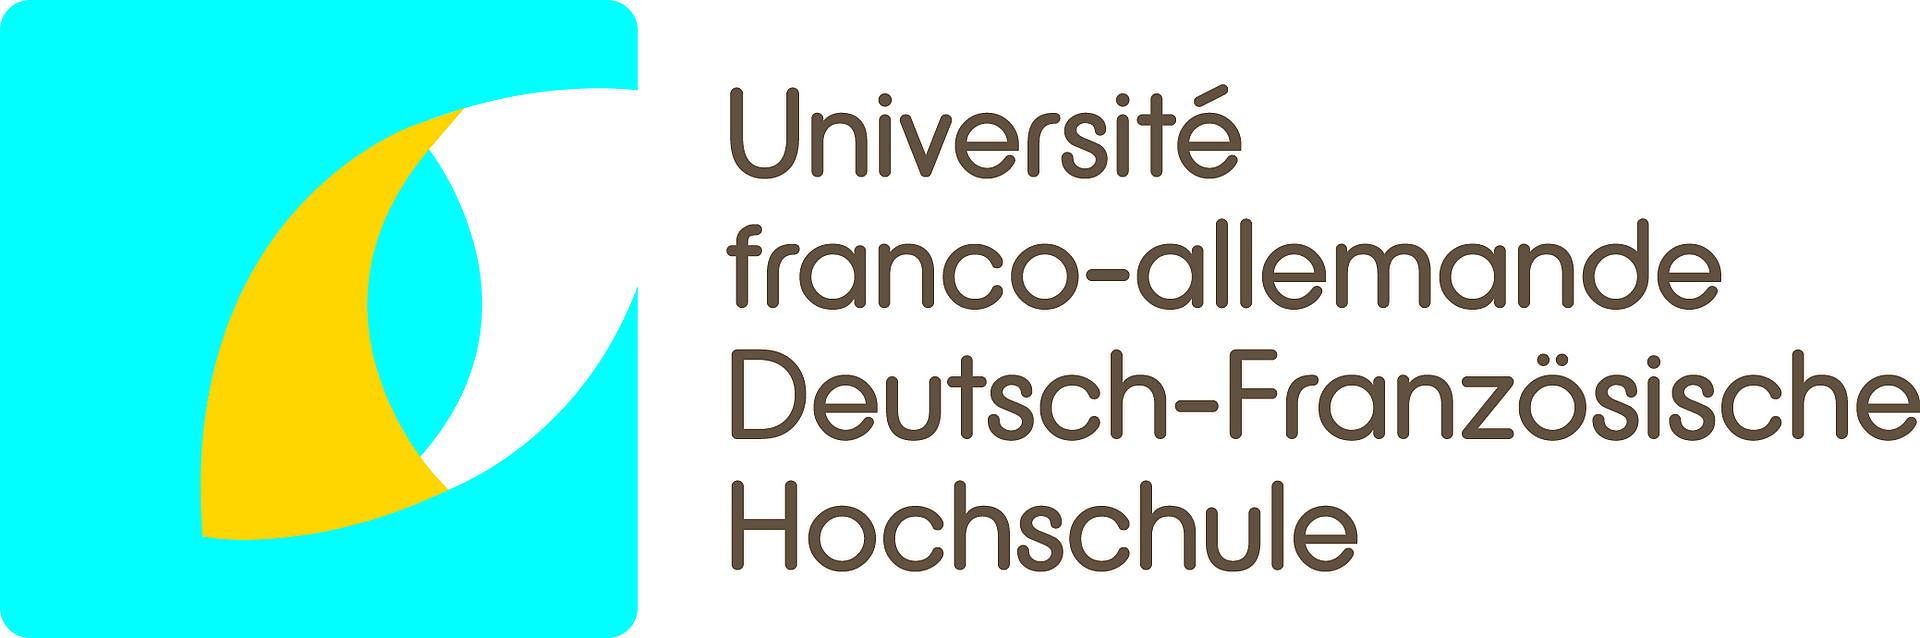 Logo Deutsch-Französische Hochschule bunt 2010